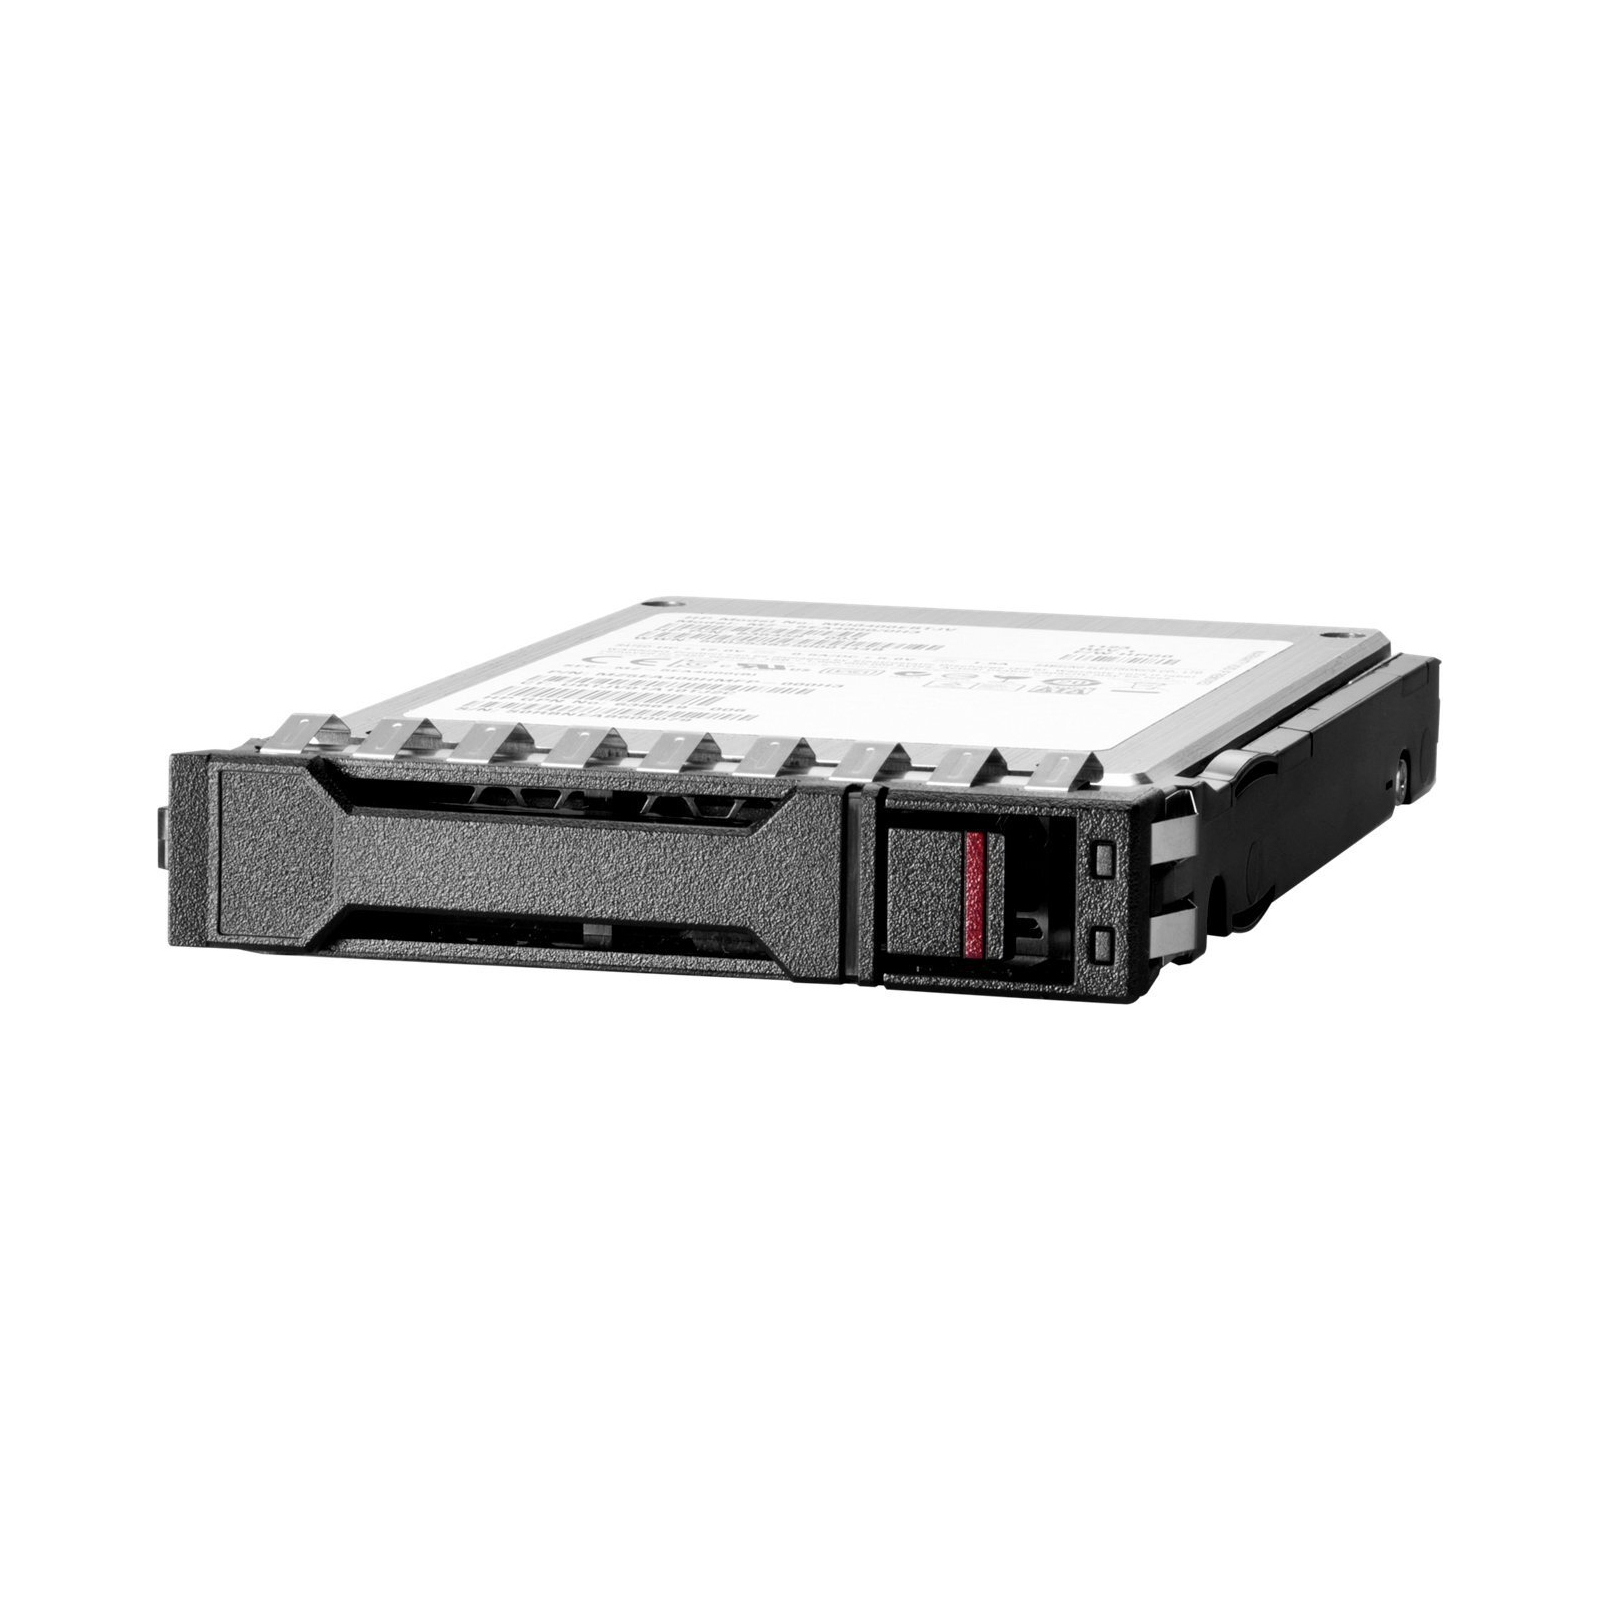 Накопитель SSD для сервера HPE E SSD 960GB 2.5inch SATA RI BC MV (P40498-B21)